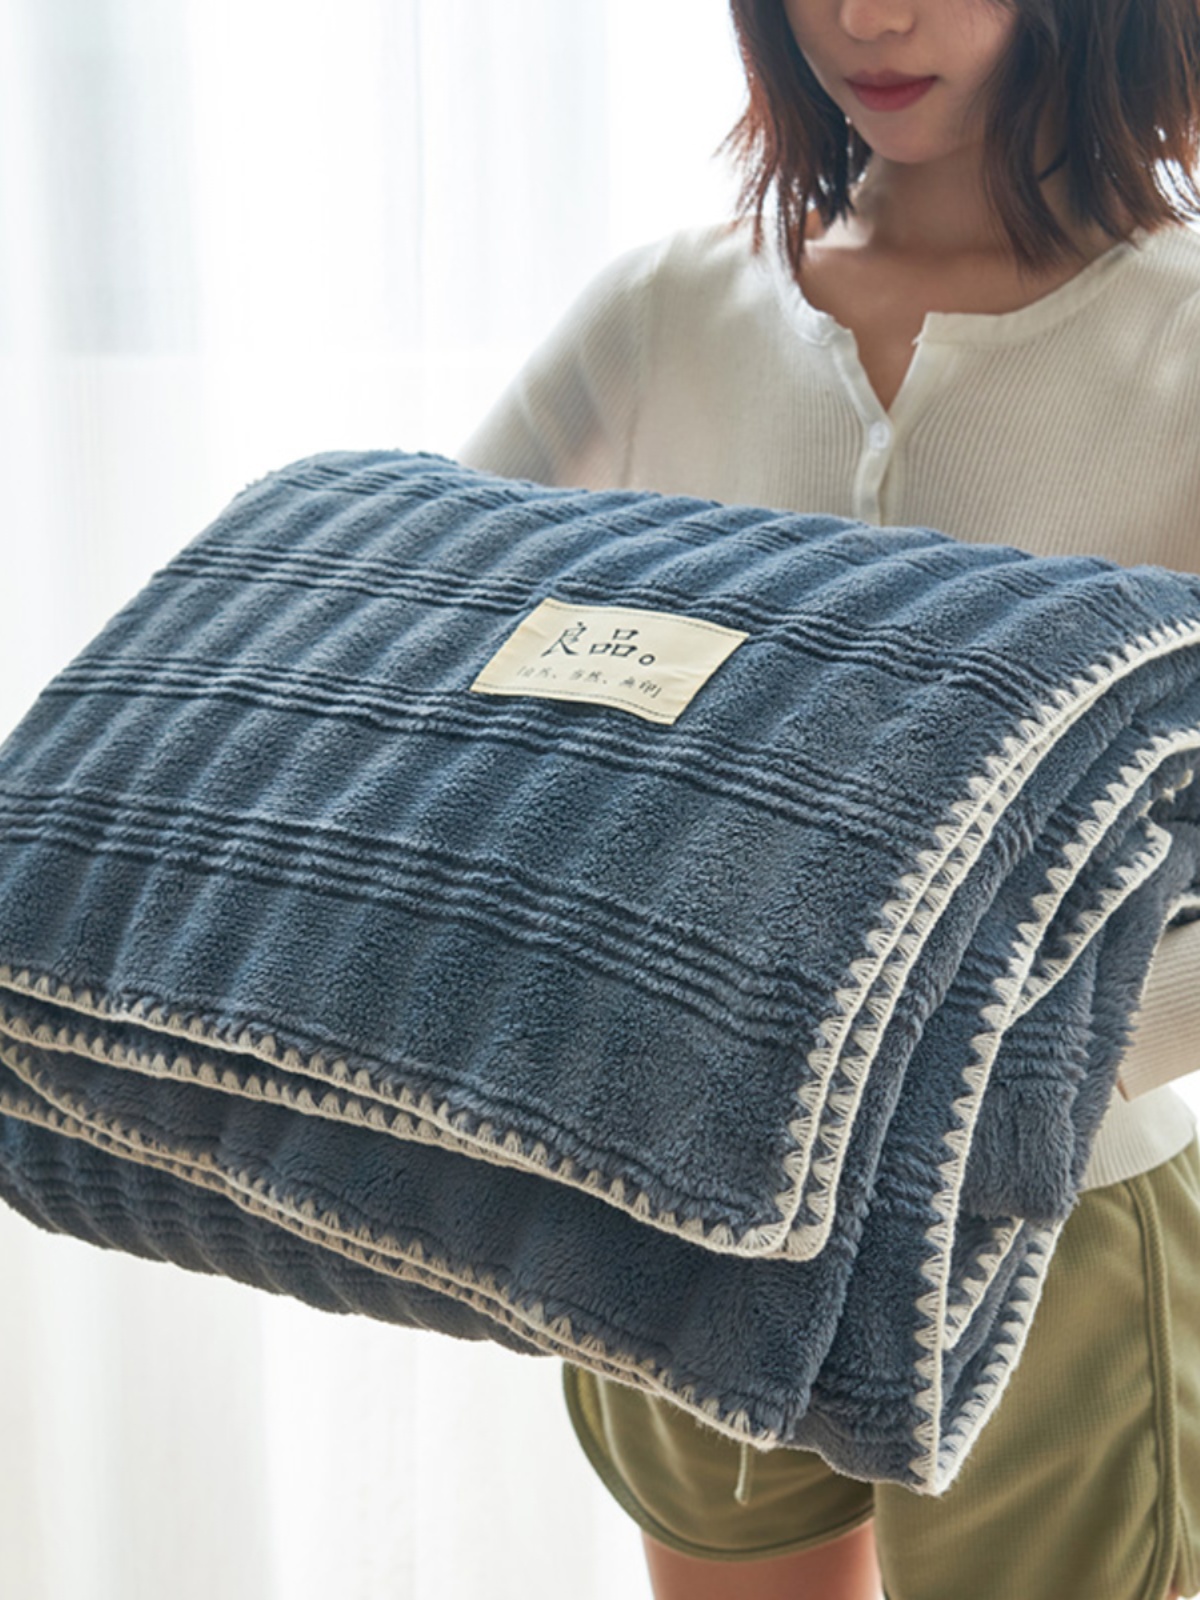 溫暖舒適的布蘭卡兔毛絨毛毯加厚設計適合冬季使用適用於沙發床等多種場合 (4.1折)